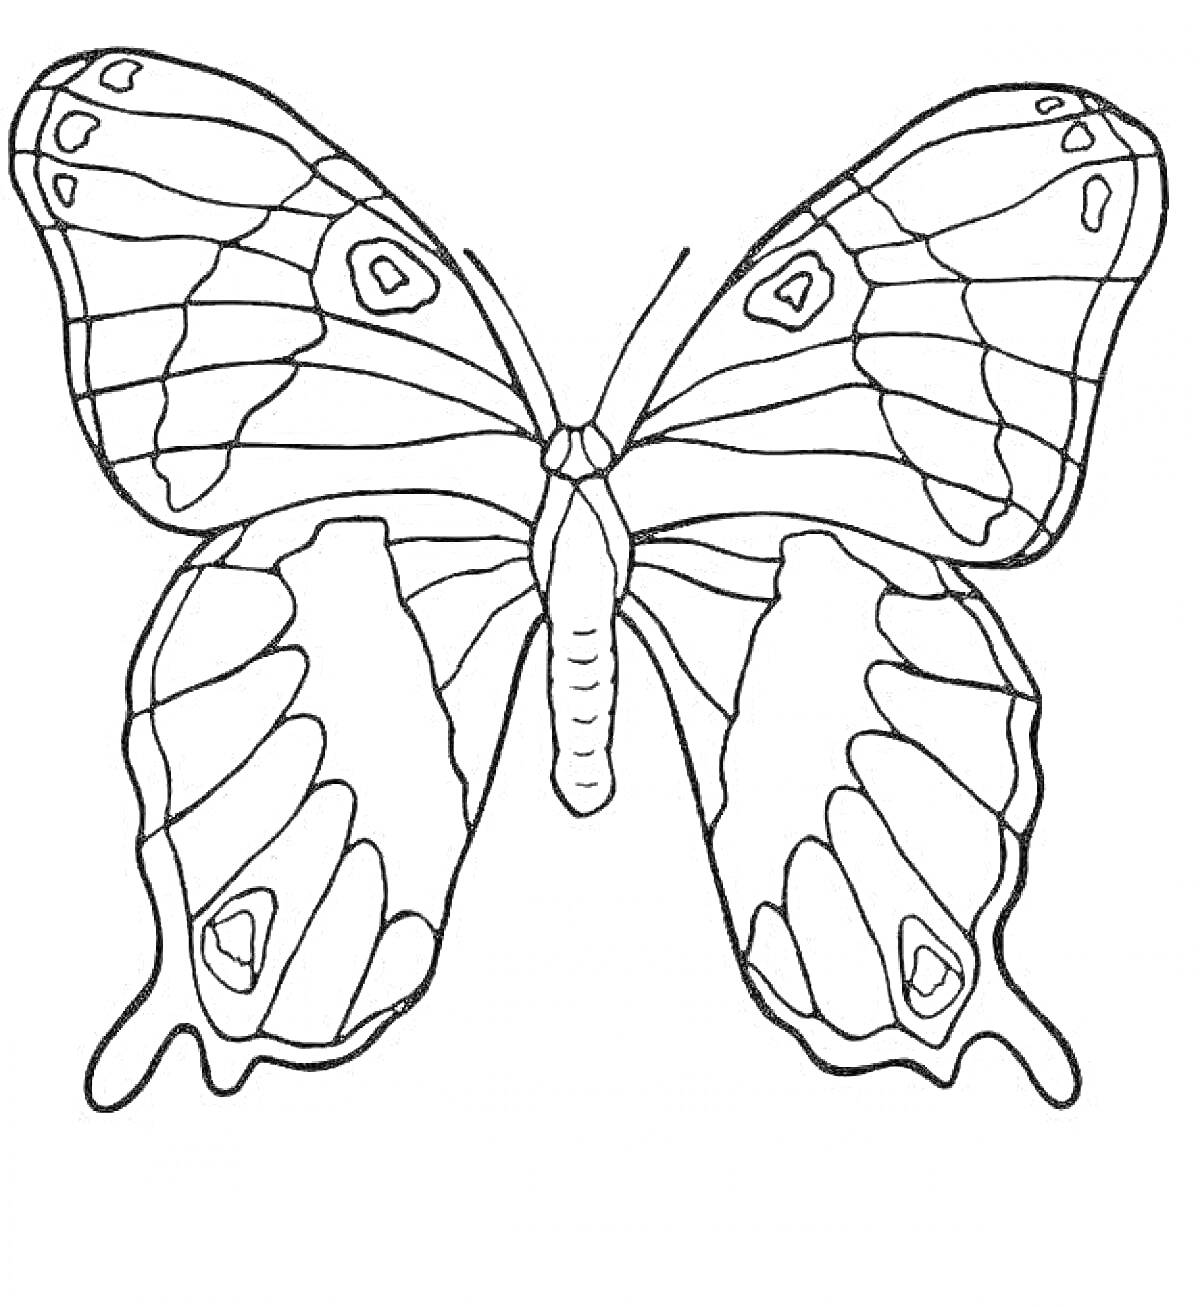 Раскраска Бабочка с пронумерованными крыльями и волнистыми линиями